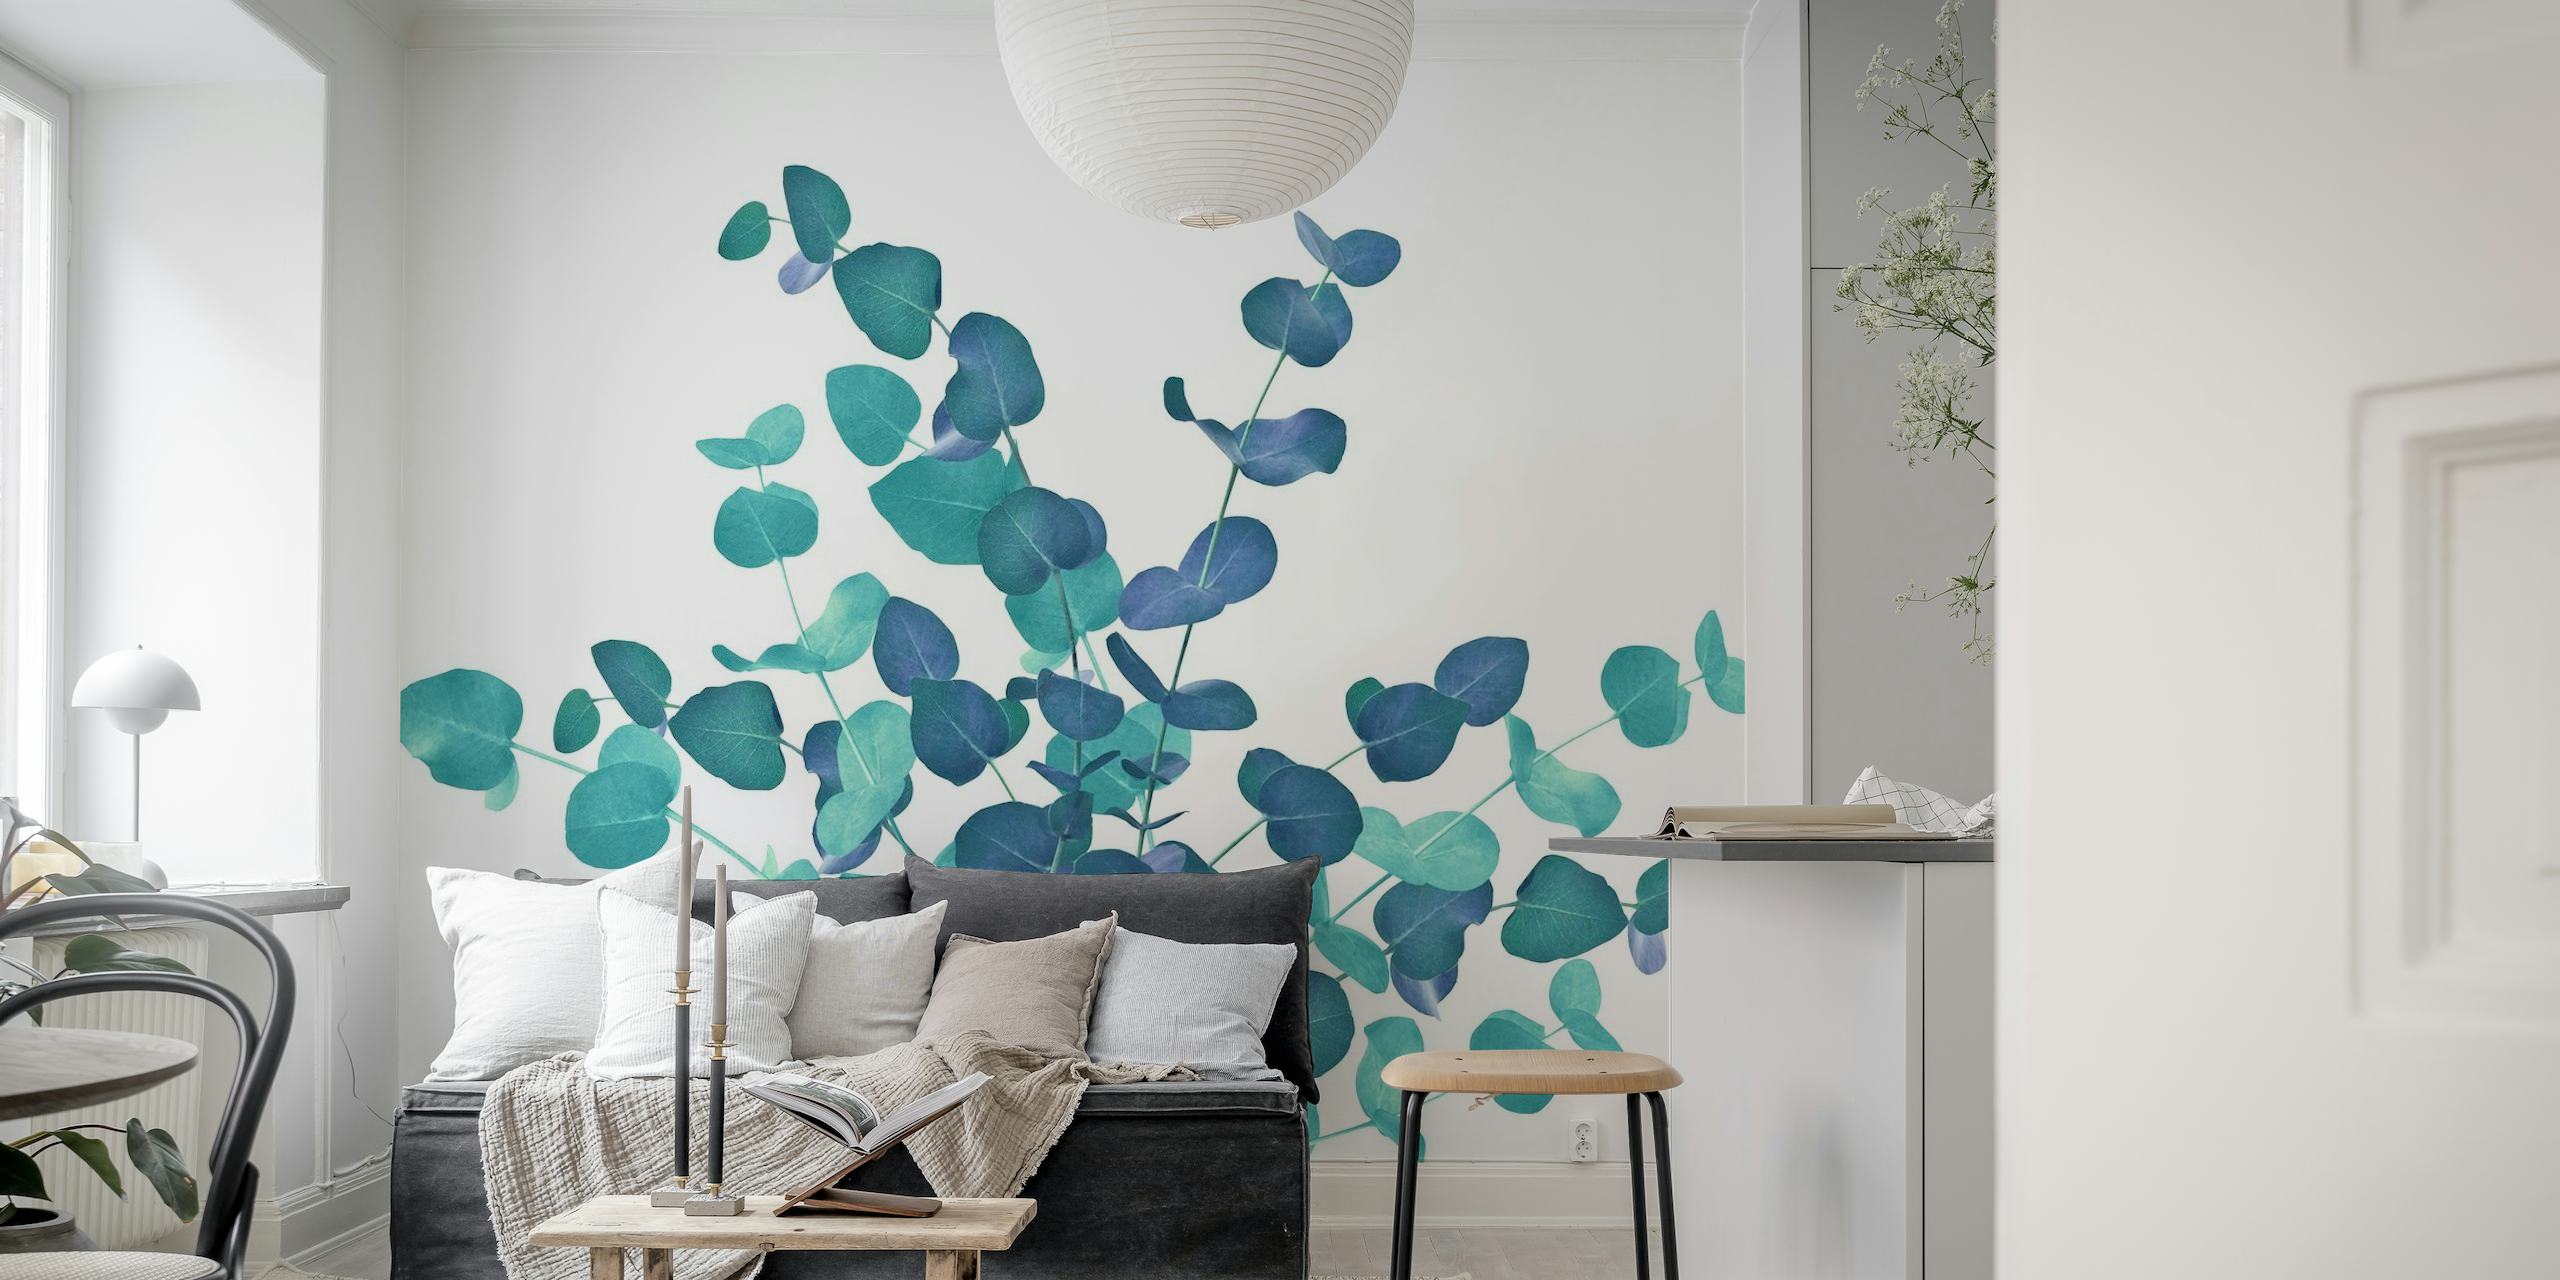 Peinture murale de feuilles d'eucalyptus dans des tons bleus, créant une exposition botanique sereine